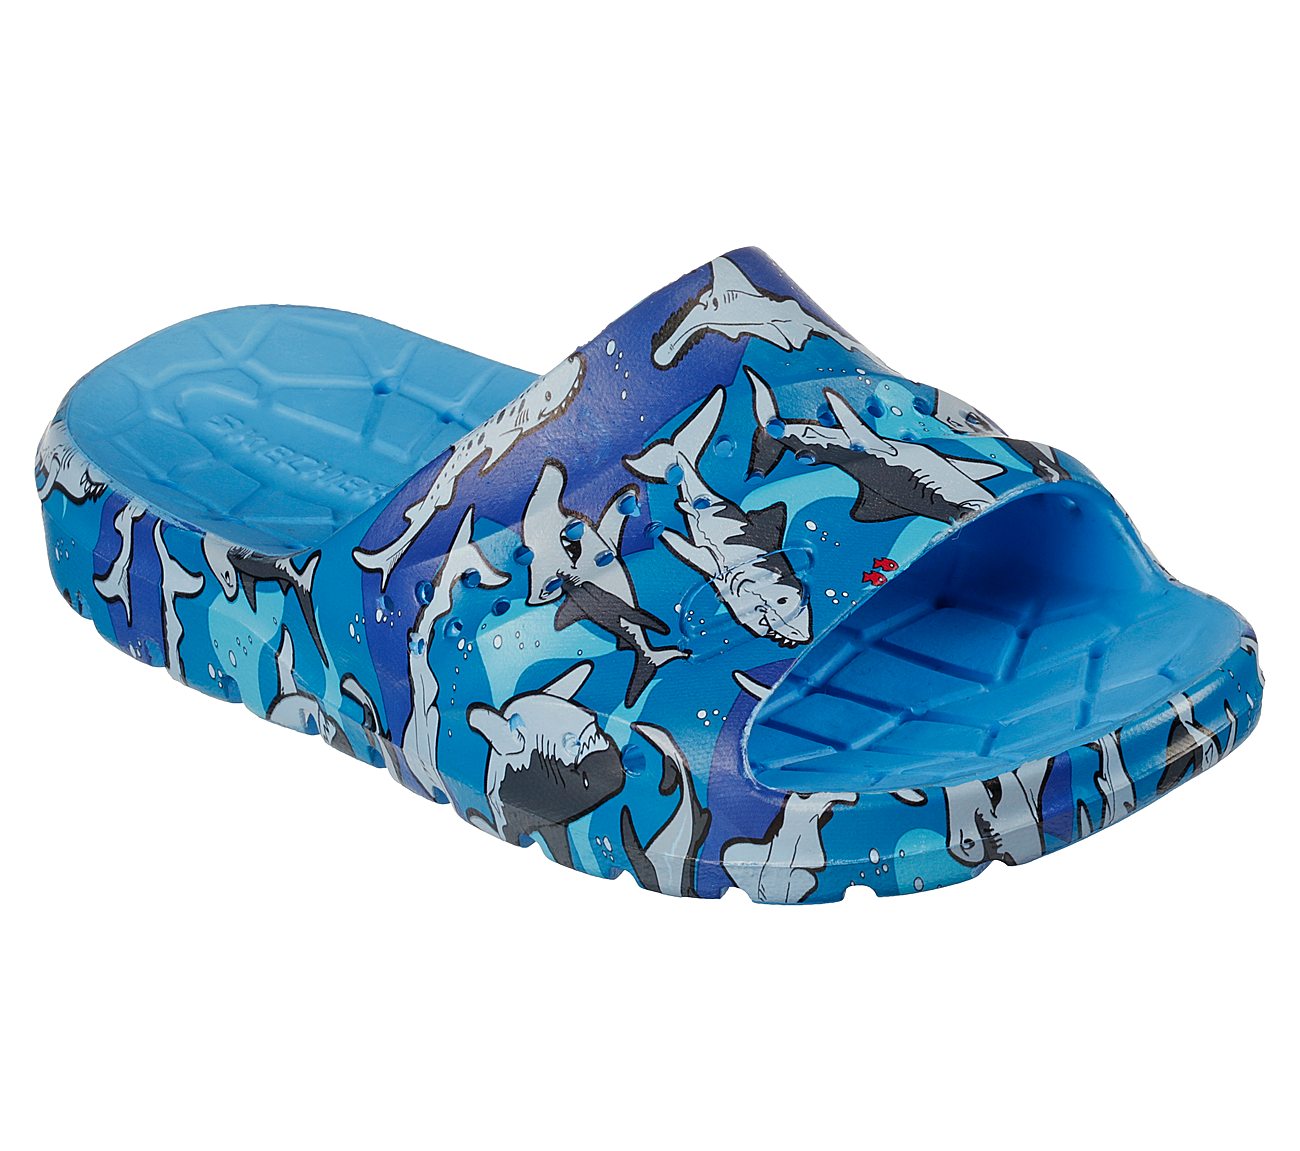 HOGAN - DANGEROUS WATERS, BLUE/LIGHT BLUE Footwear Right View